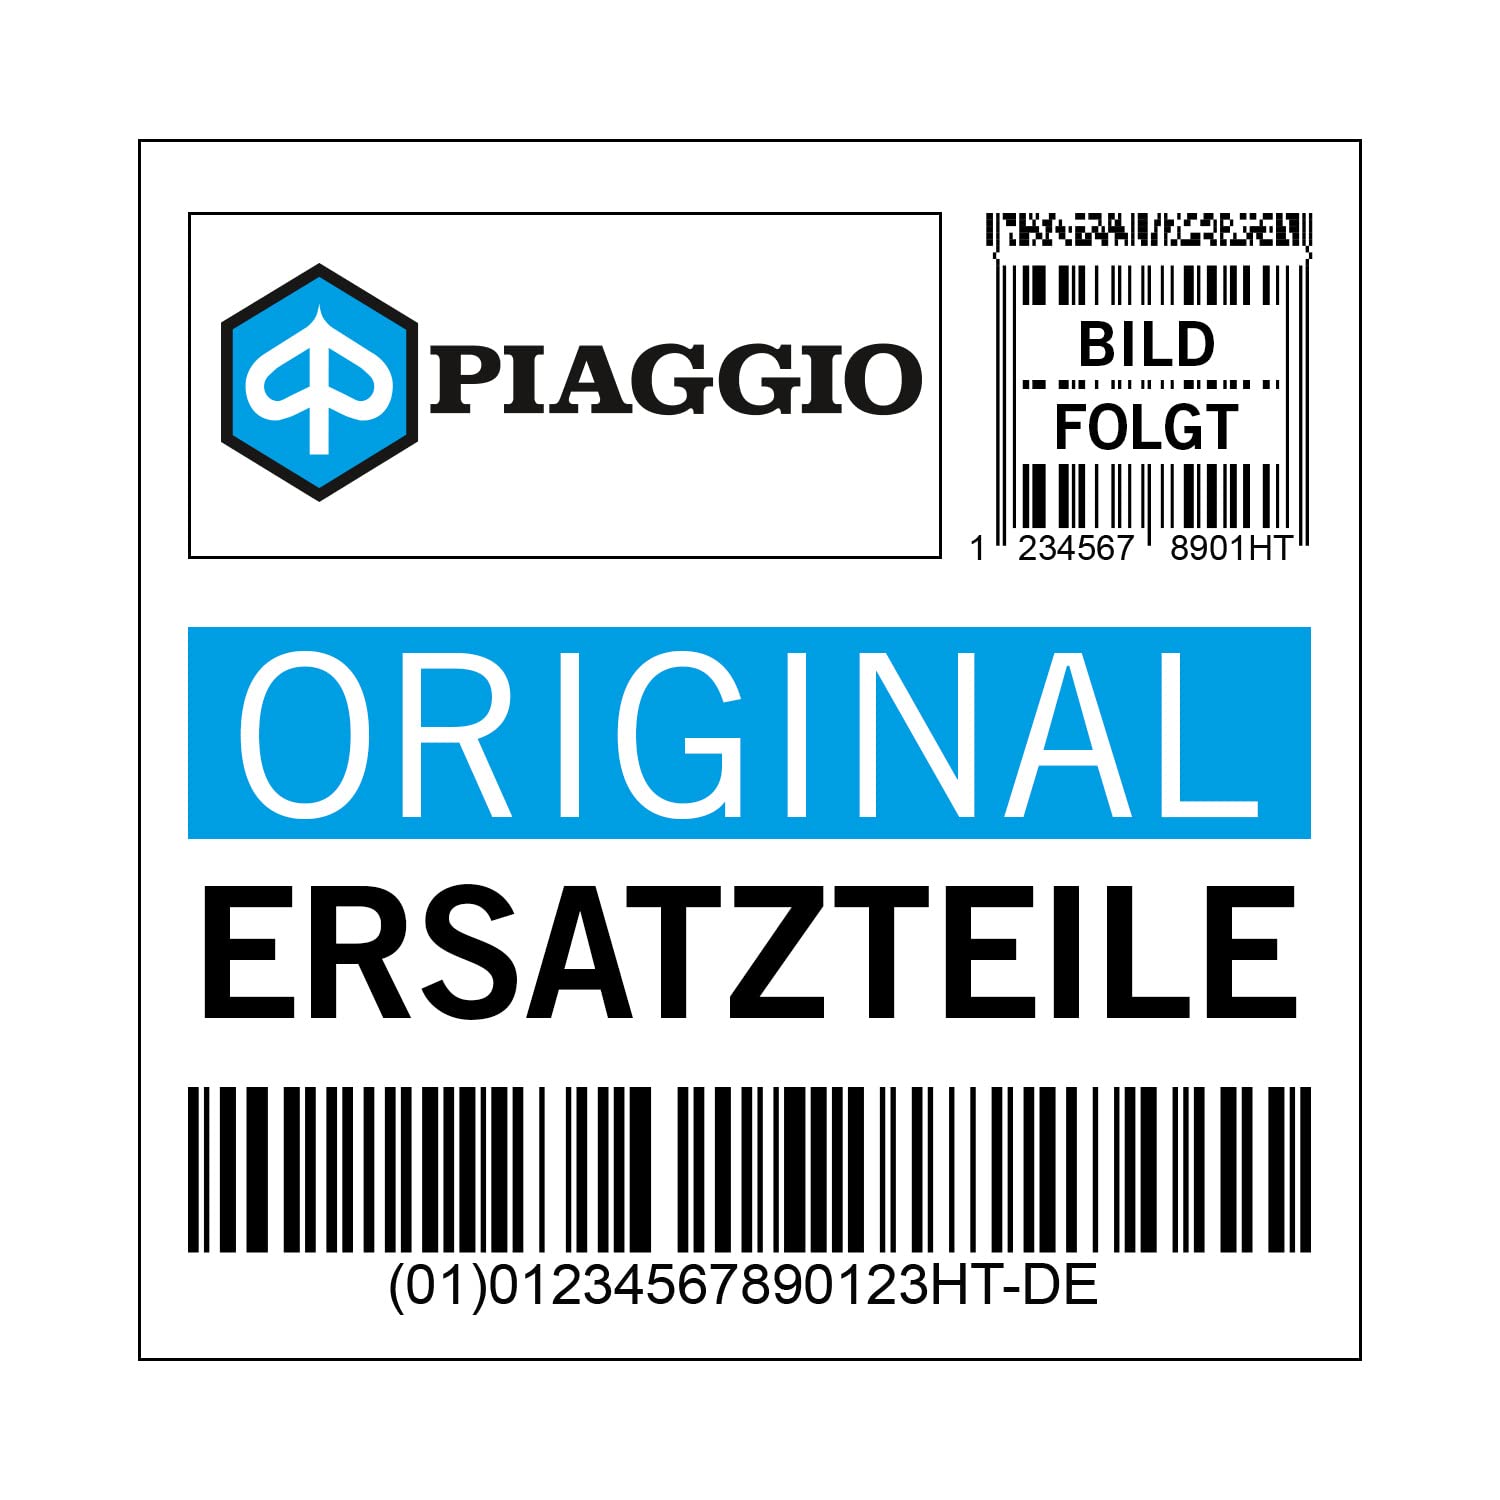 Deckel Piaggio, E43531725 von Maxtuned